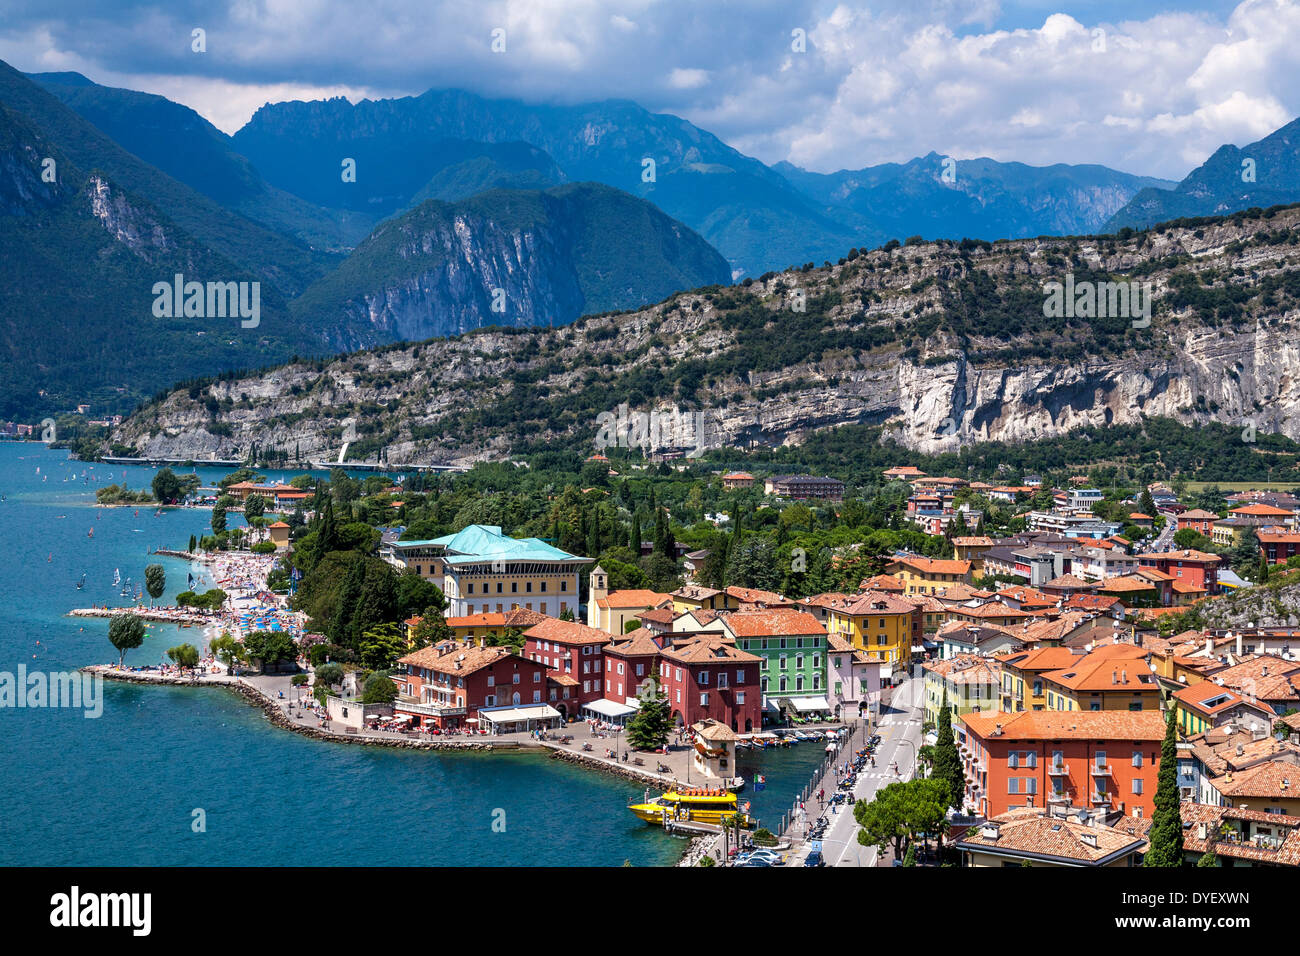 Einen tollen Blick auf die Stadt von Torbole, Gardasee, Italien  Stockfotografie - Alamy